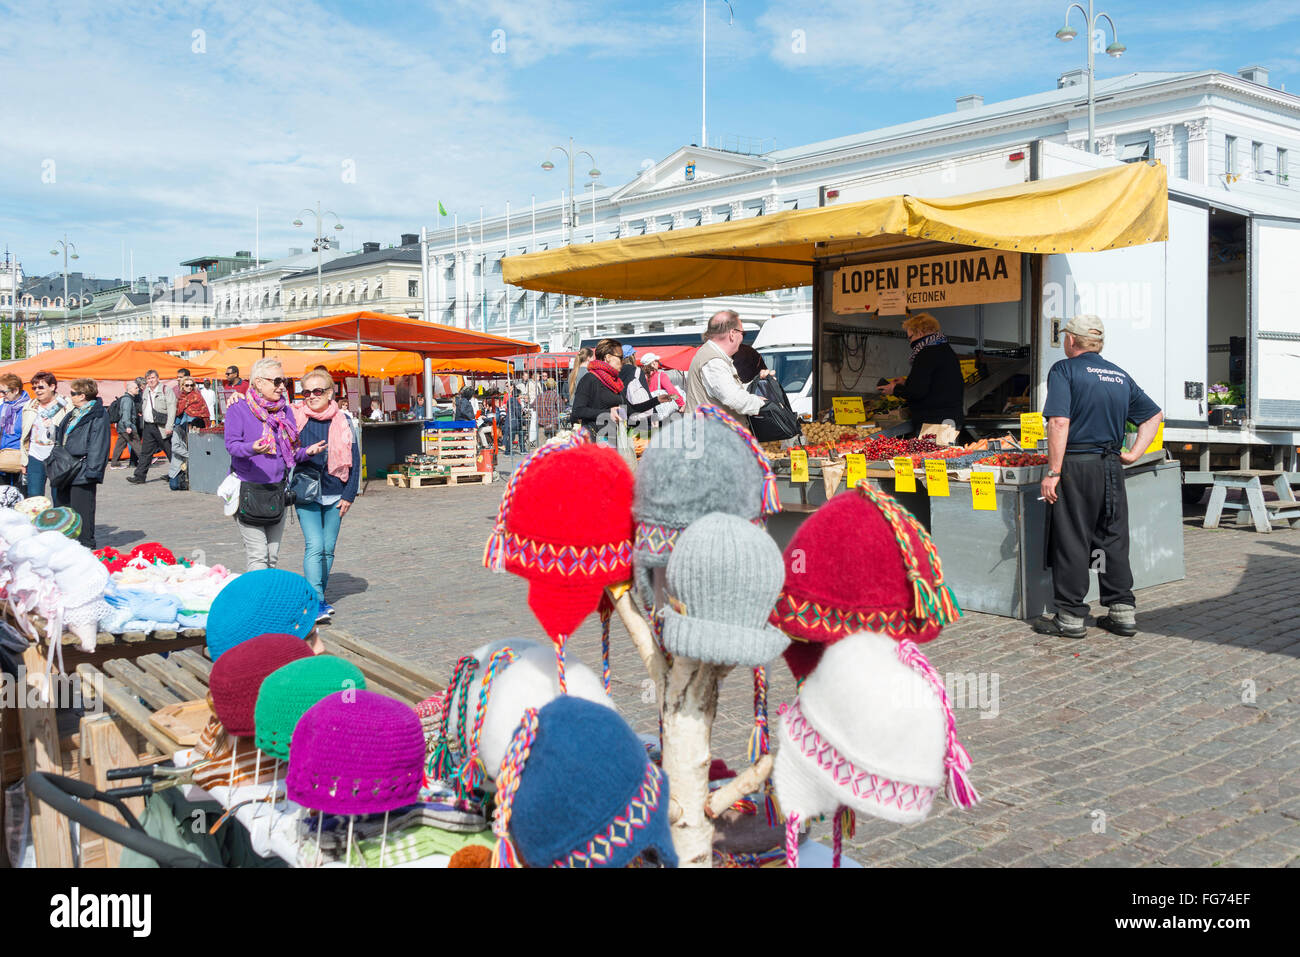 Negozio di souvenir e bancarelle di artigiani, la Piazza del Mercato (Kauppatori), Helsinki, regione di Uusimaa, la Repubblica di Finlandia Foto Stock